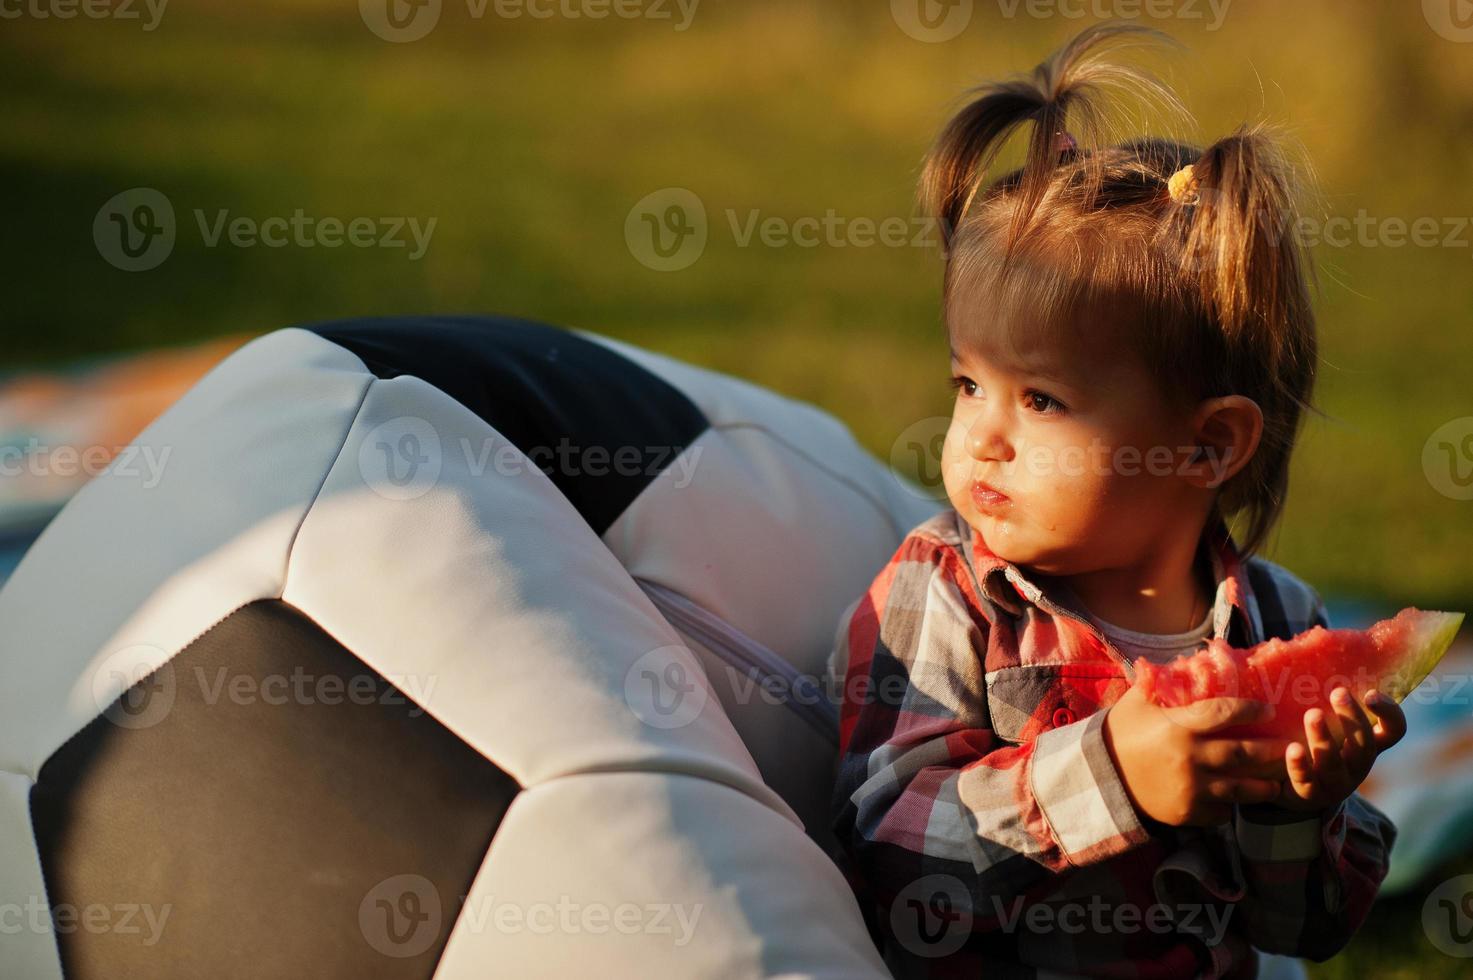 schattig babymeisje in geruit overhemd zit op de poef van de voetbalbal en eet watermeloen. foto